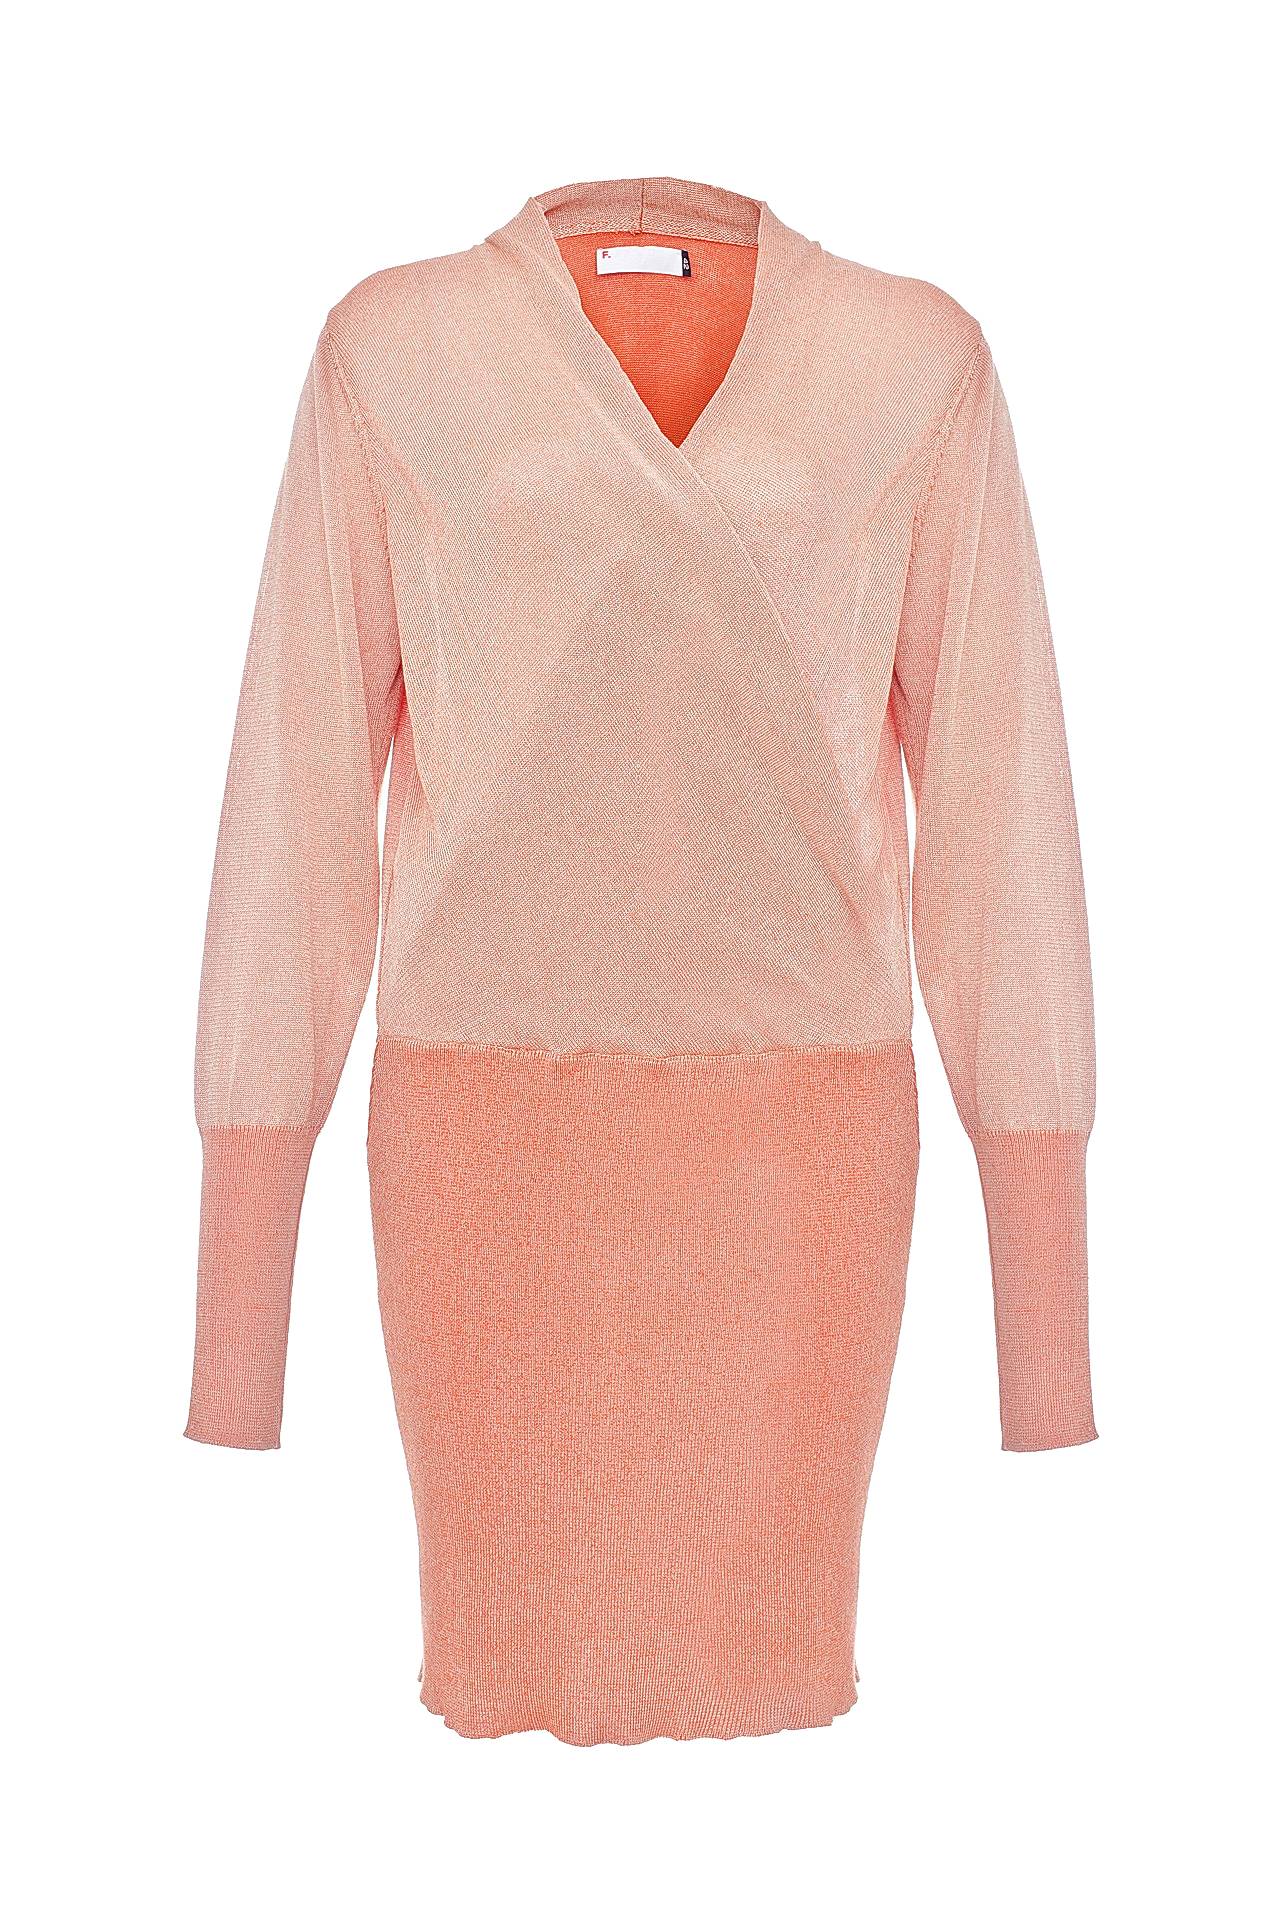 Одежда женская Платье F.EGIDIO (050145/12.1). Купить за 11450 руб.